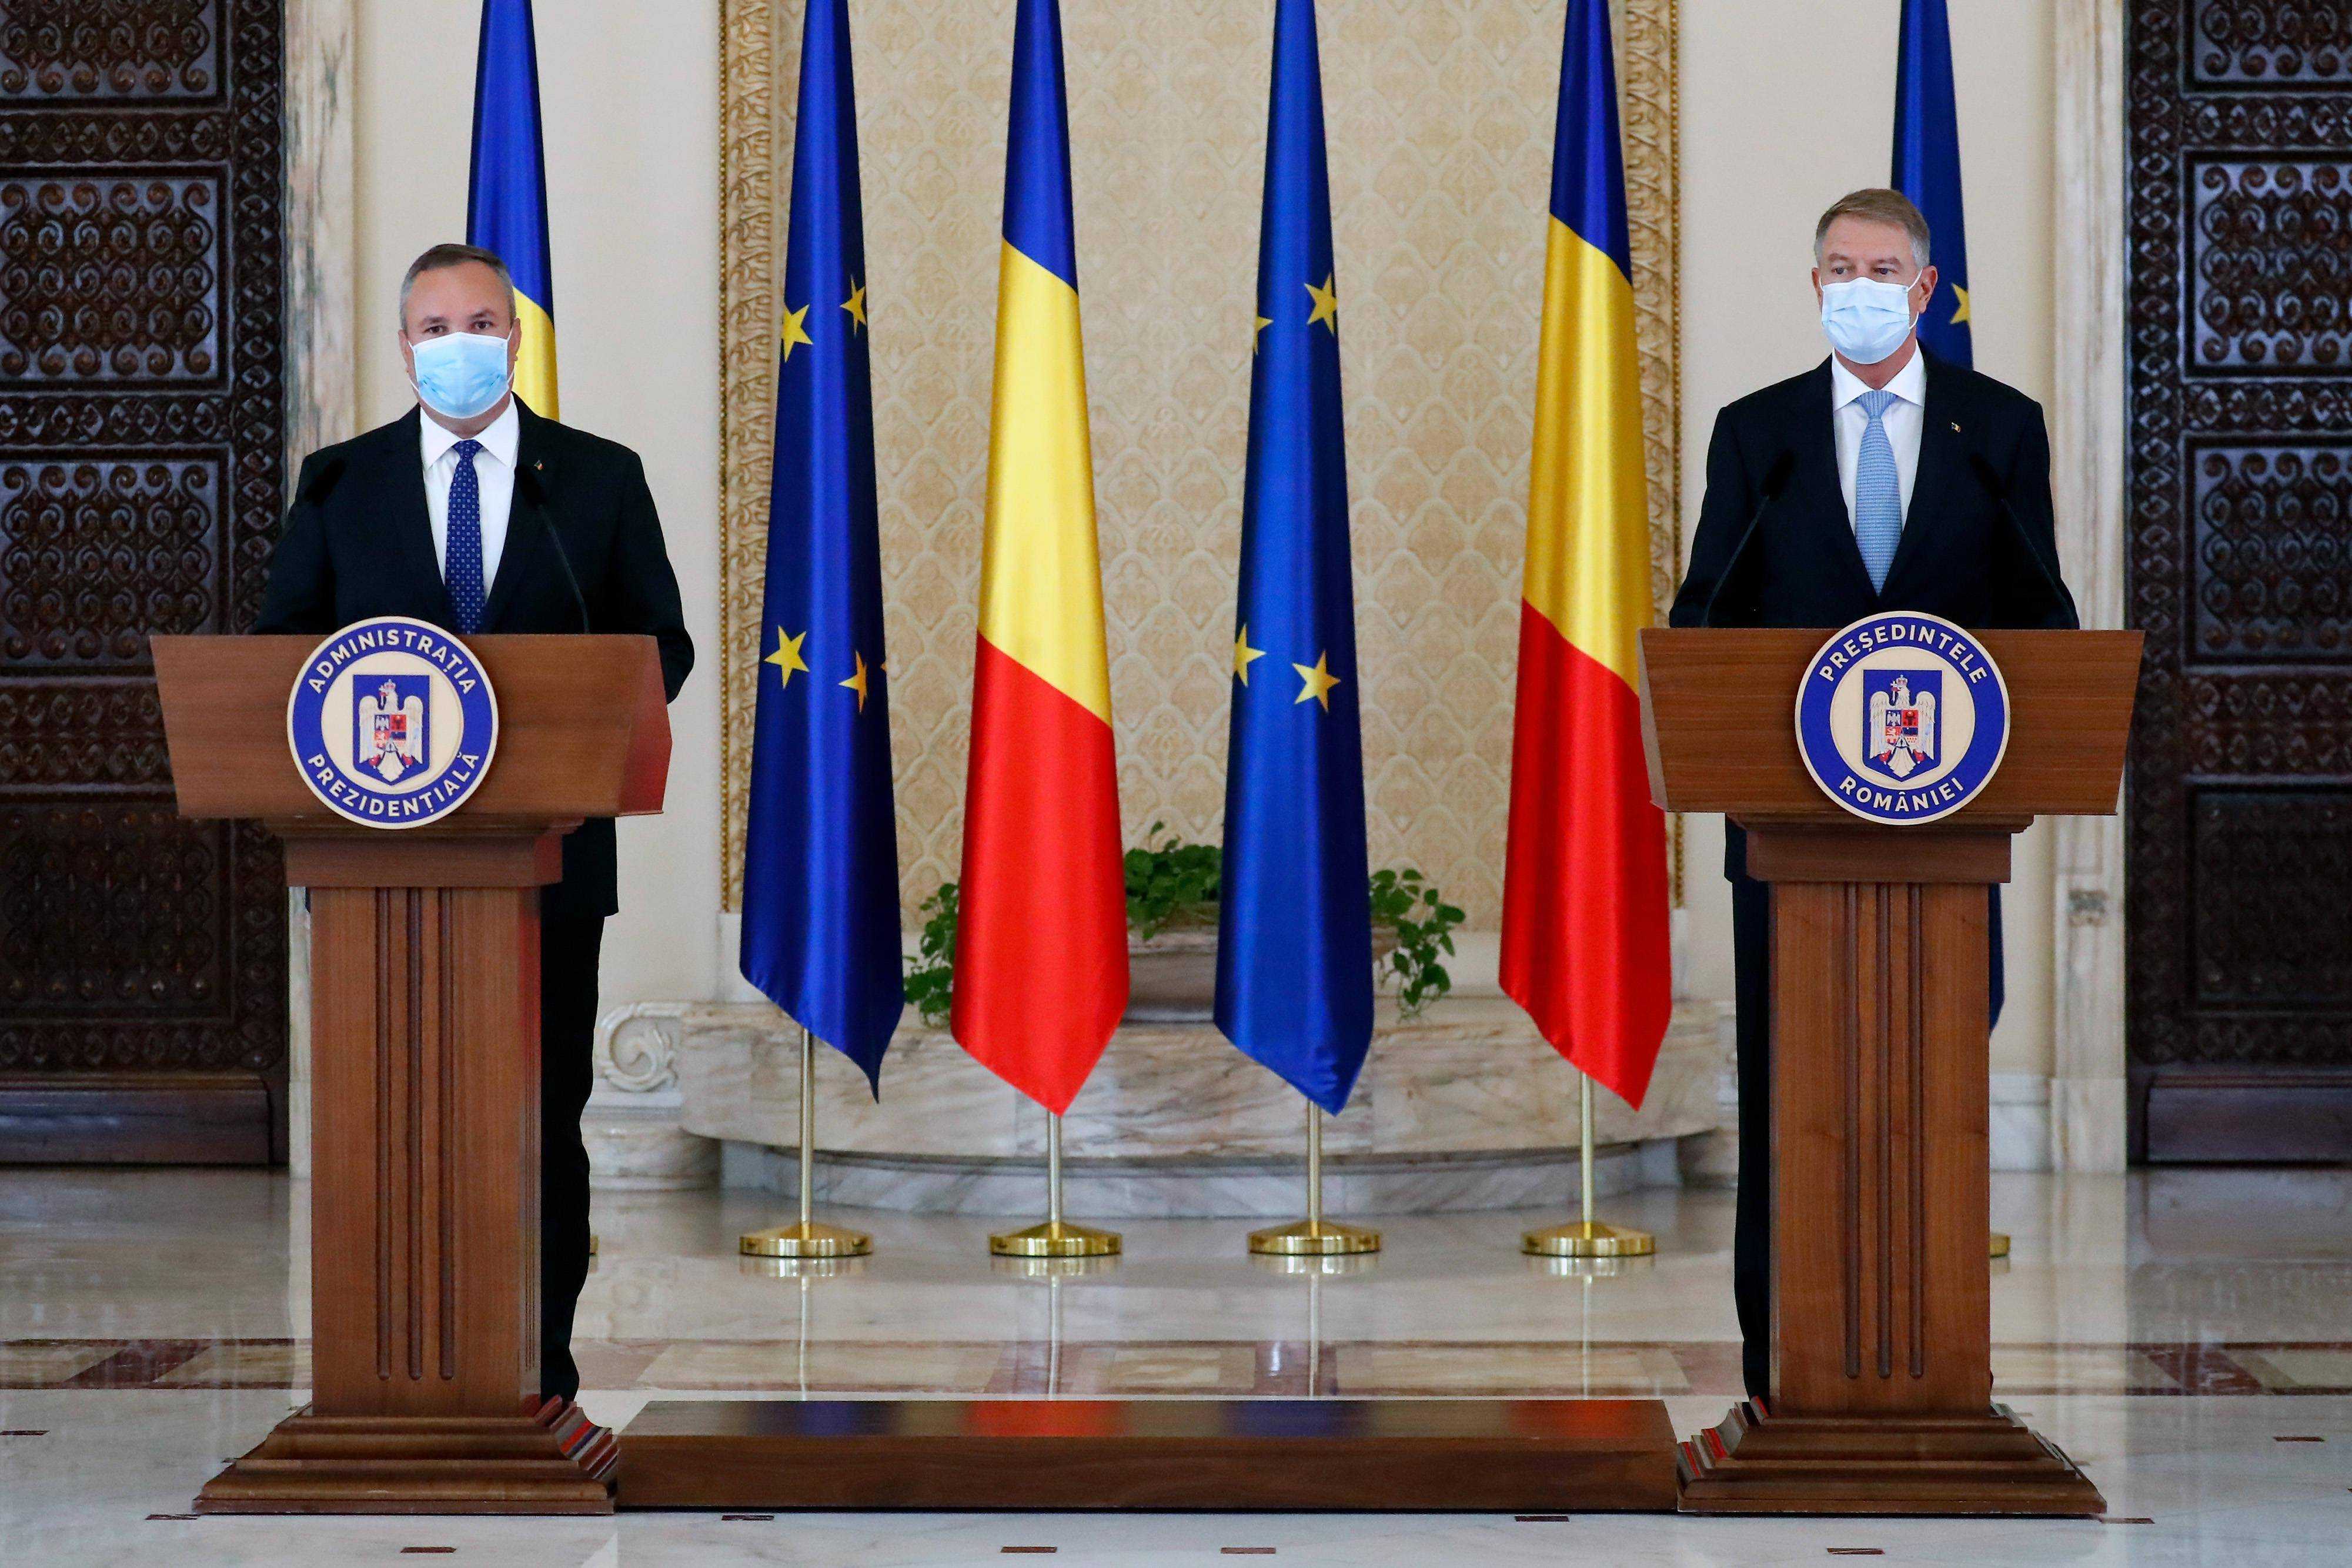 罗马尼亚总统授权国防部长尼古拉·丘克组阁